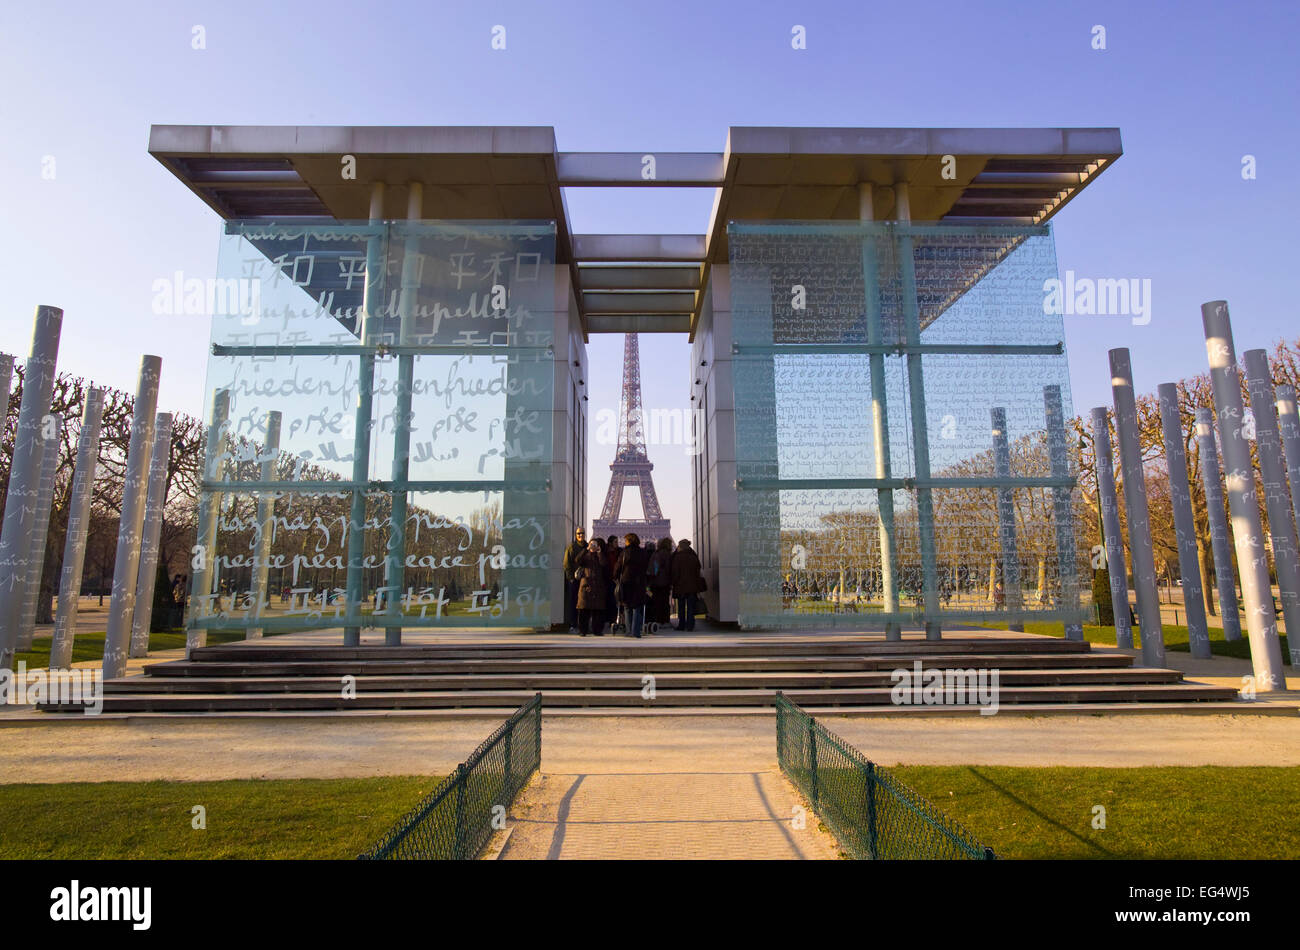 Mur de la Paix, Peace memorial and the Eiffel tower Paris. Stock Photo